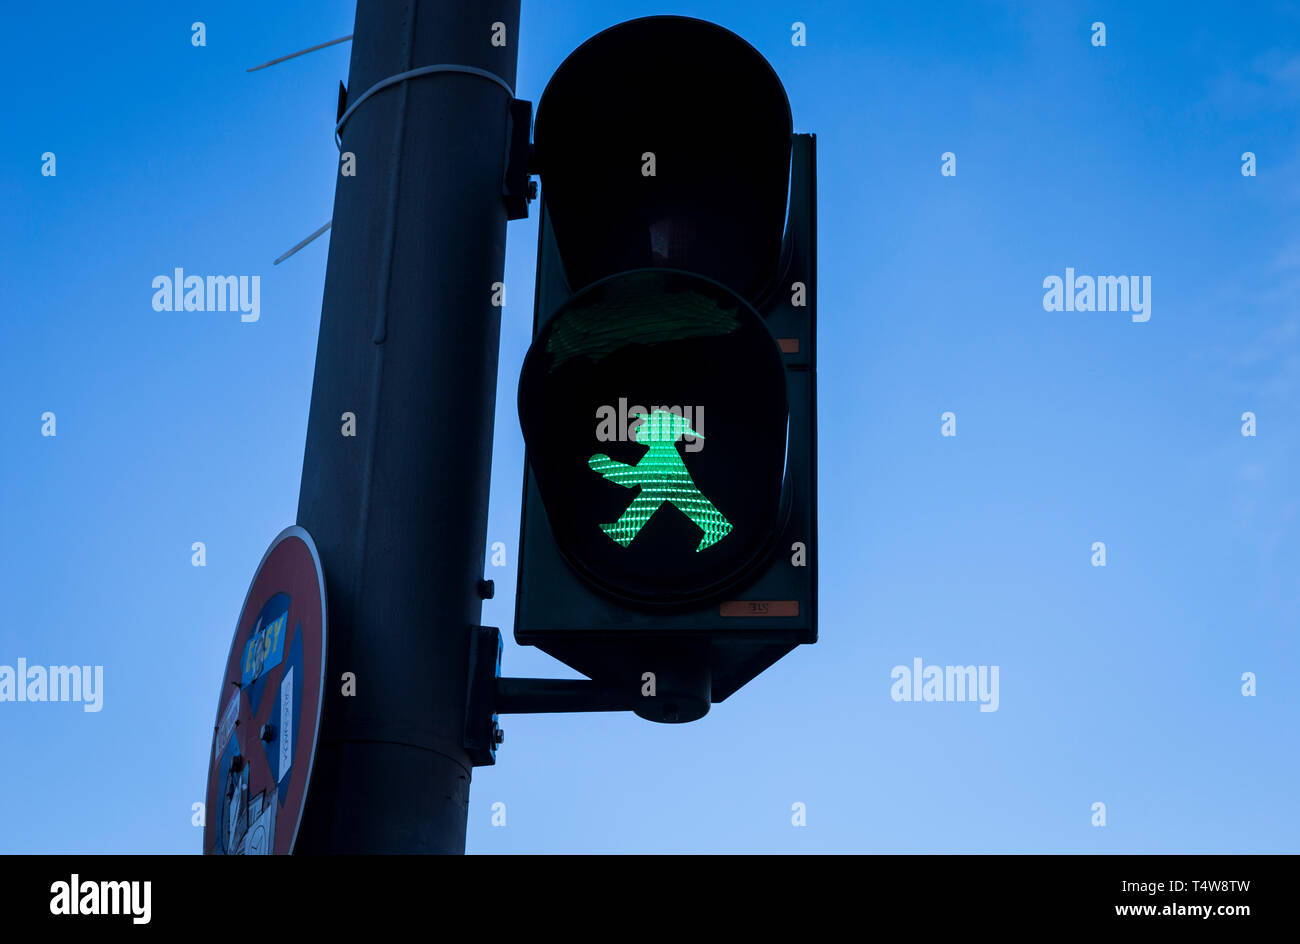 Green Ampelmann on a pedestrian crossing in Berlin, Germany. Stock Photo